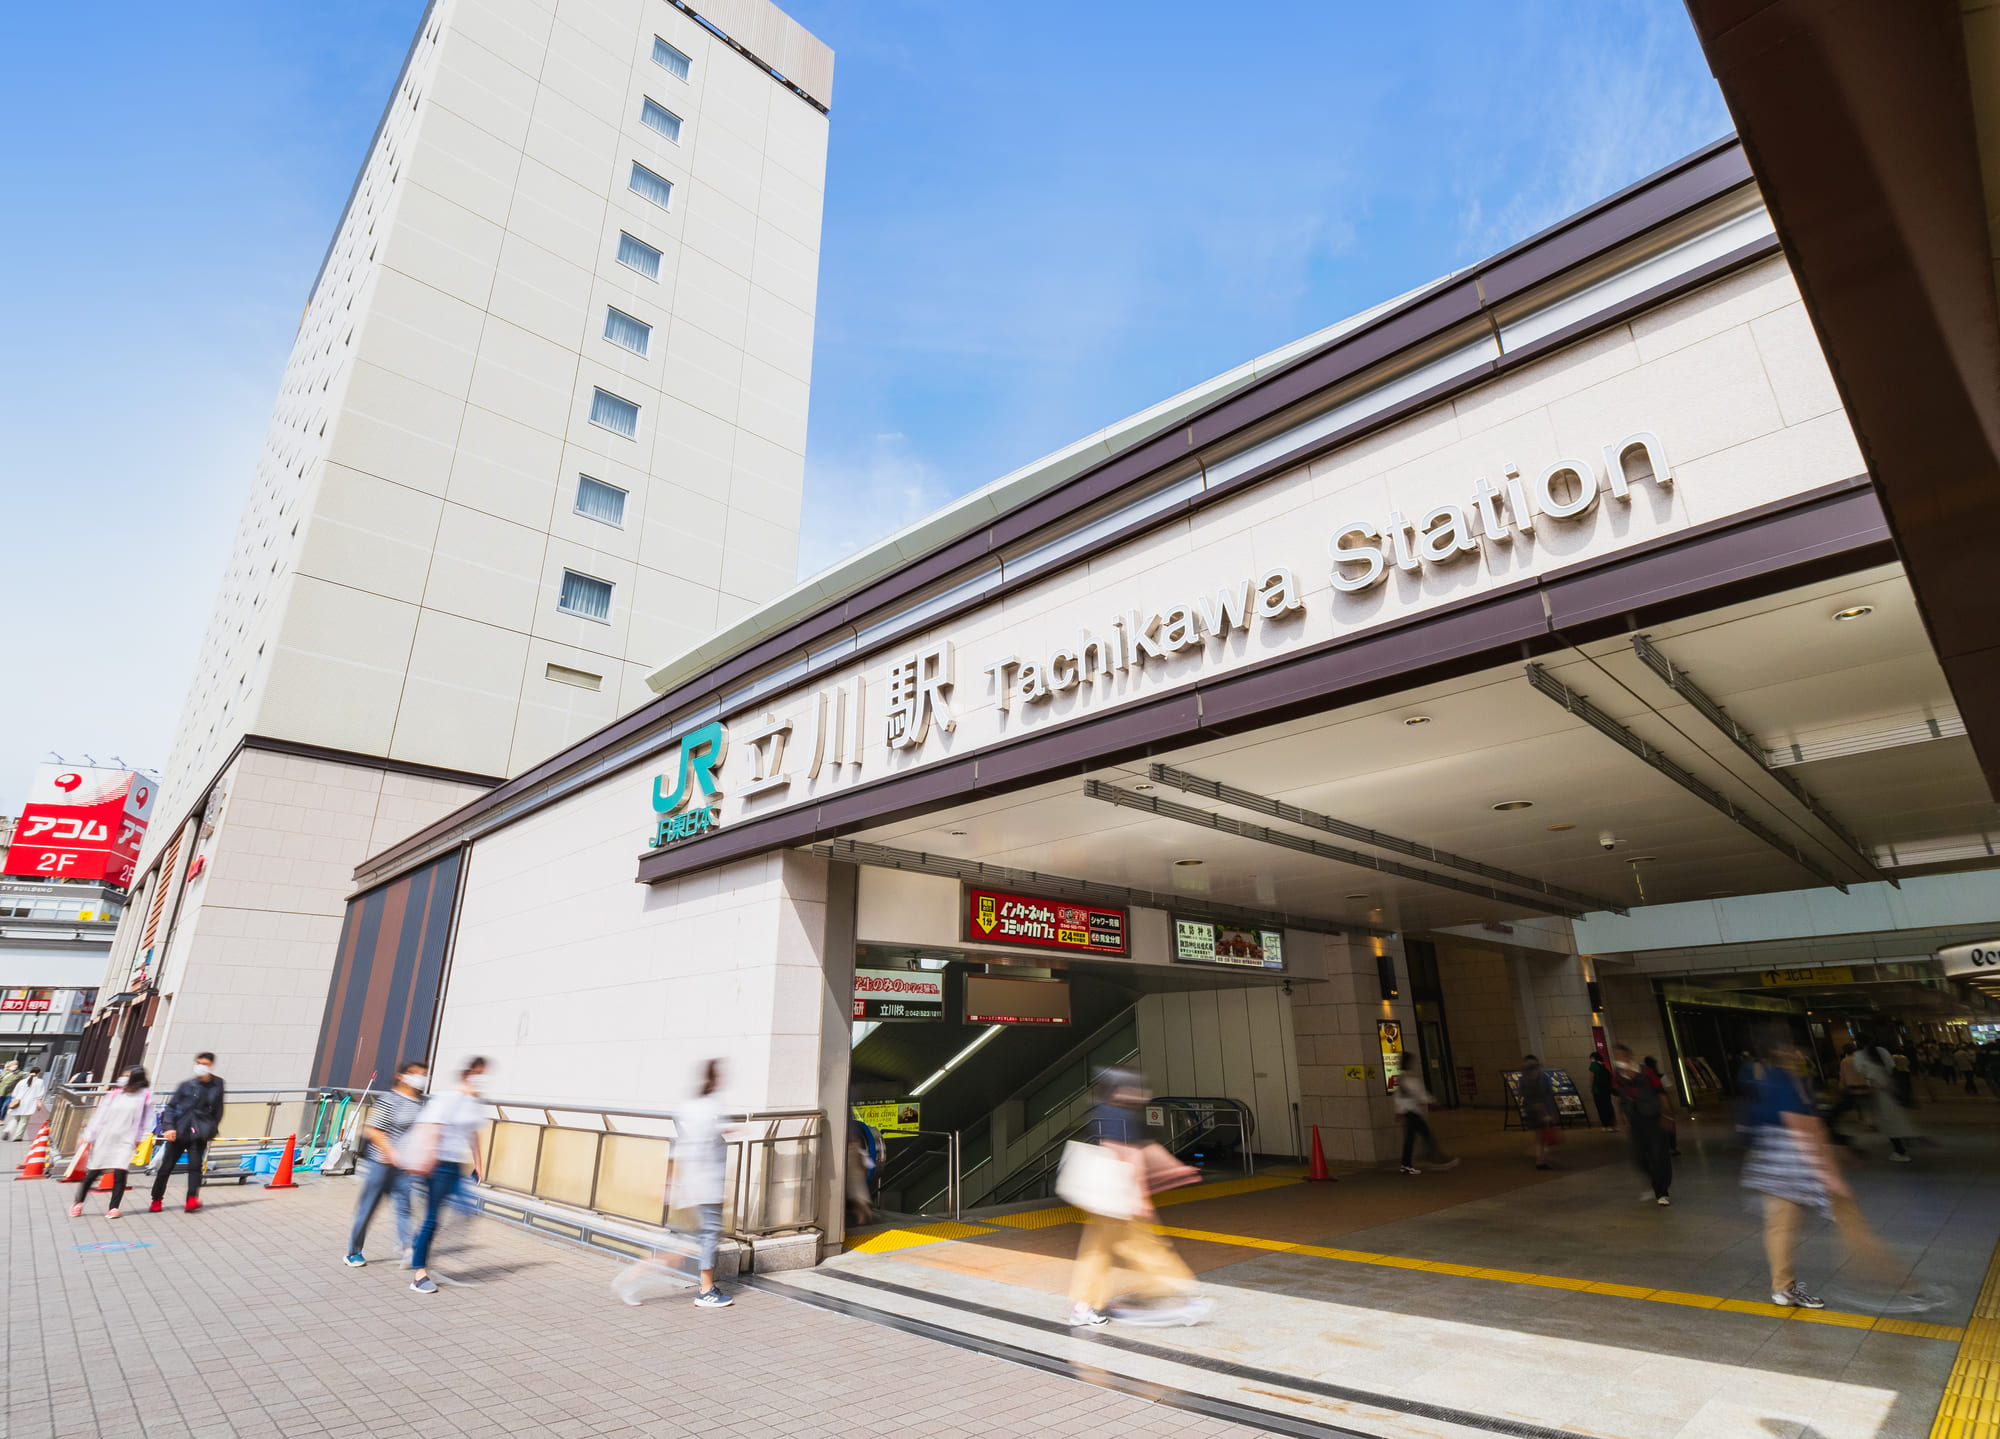 東京郊外の多摩地域では最も賑わっている立川エリア。駅周辺には商業施設や飲食店が立ち並び、多くの人で賑わっています。日本人メンズエステは立川駅周辺に30店舗以上あり、ほとんどが南口周辺に密集しています。出張に対応している店舗は少なく、マンションのワンルームを使用しているお店が多いようです。料金相場は60分10,000円前後と都内よりお得に利用できますが、なかには90分20,000円程度の高級店も存在します。ぽっちゃりセラピストに特化したお店や大人の女性に特化したお店など、様々なコンセプトのお店があるので好みに合わせて楽しめるでしょう。立川エリアにお越しの際はぜひメンズエステにも足を運んでみてくださいね。